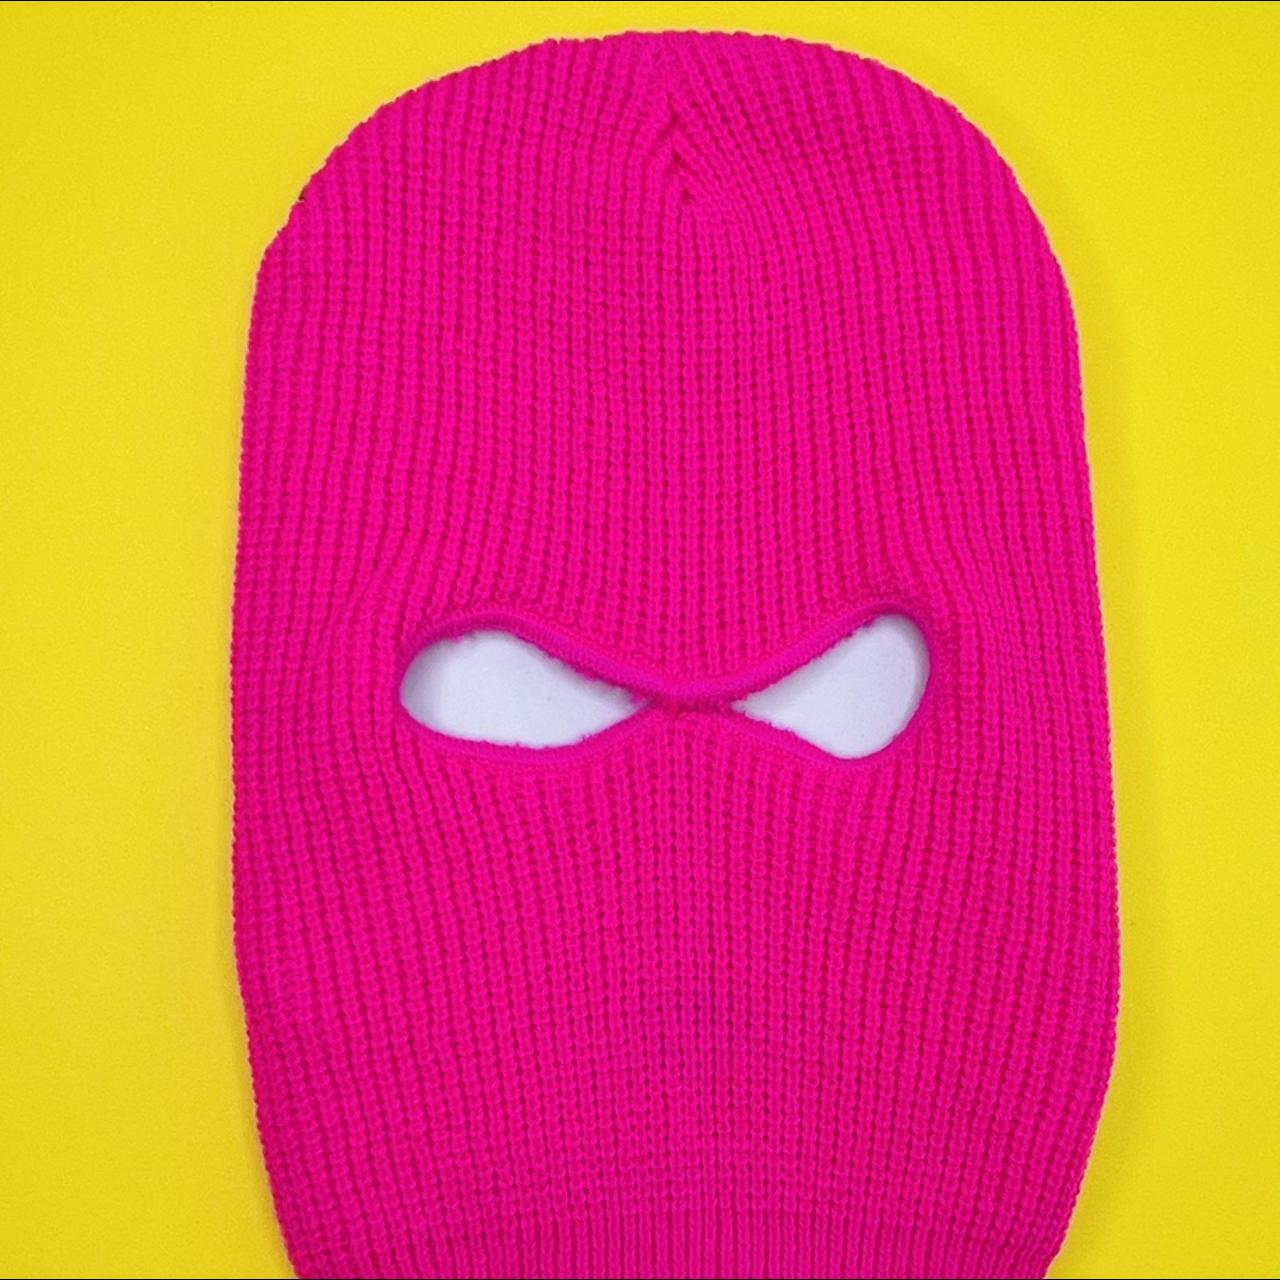 Hot pink or rose color stretchy 2 holes Ski mask... - Depop